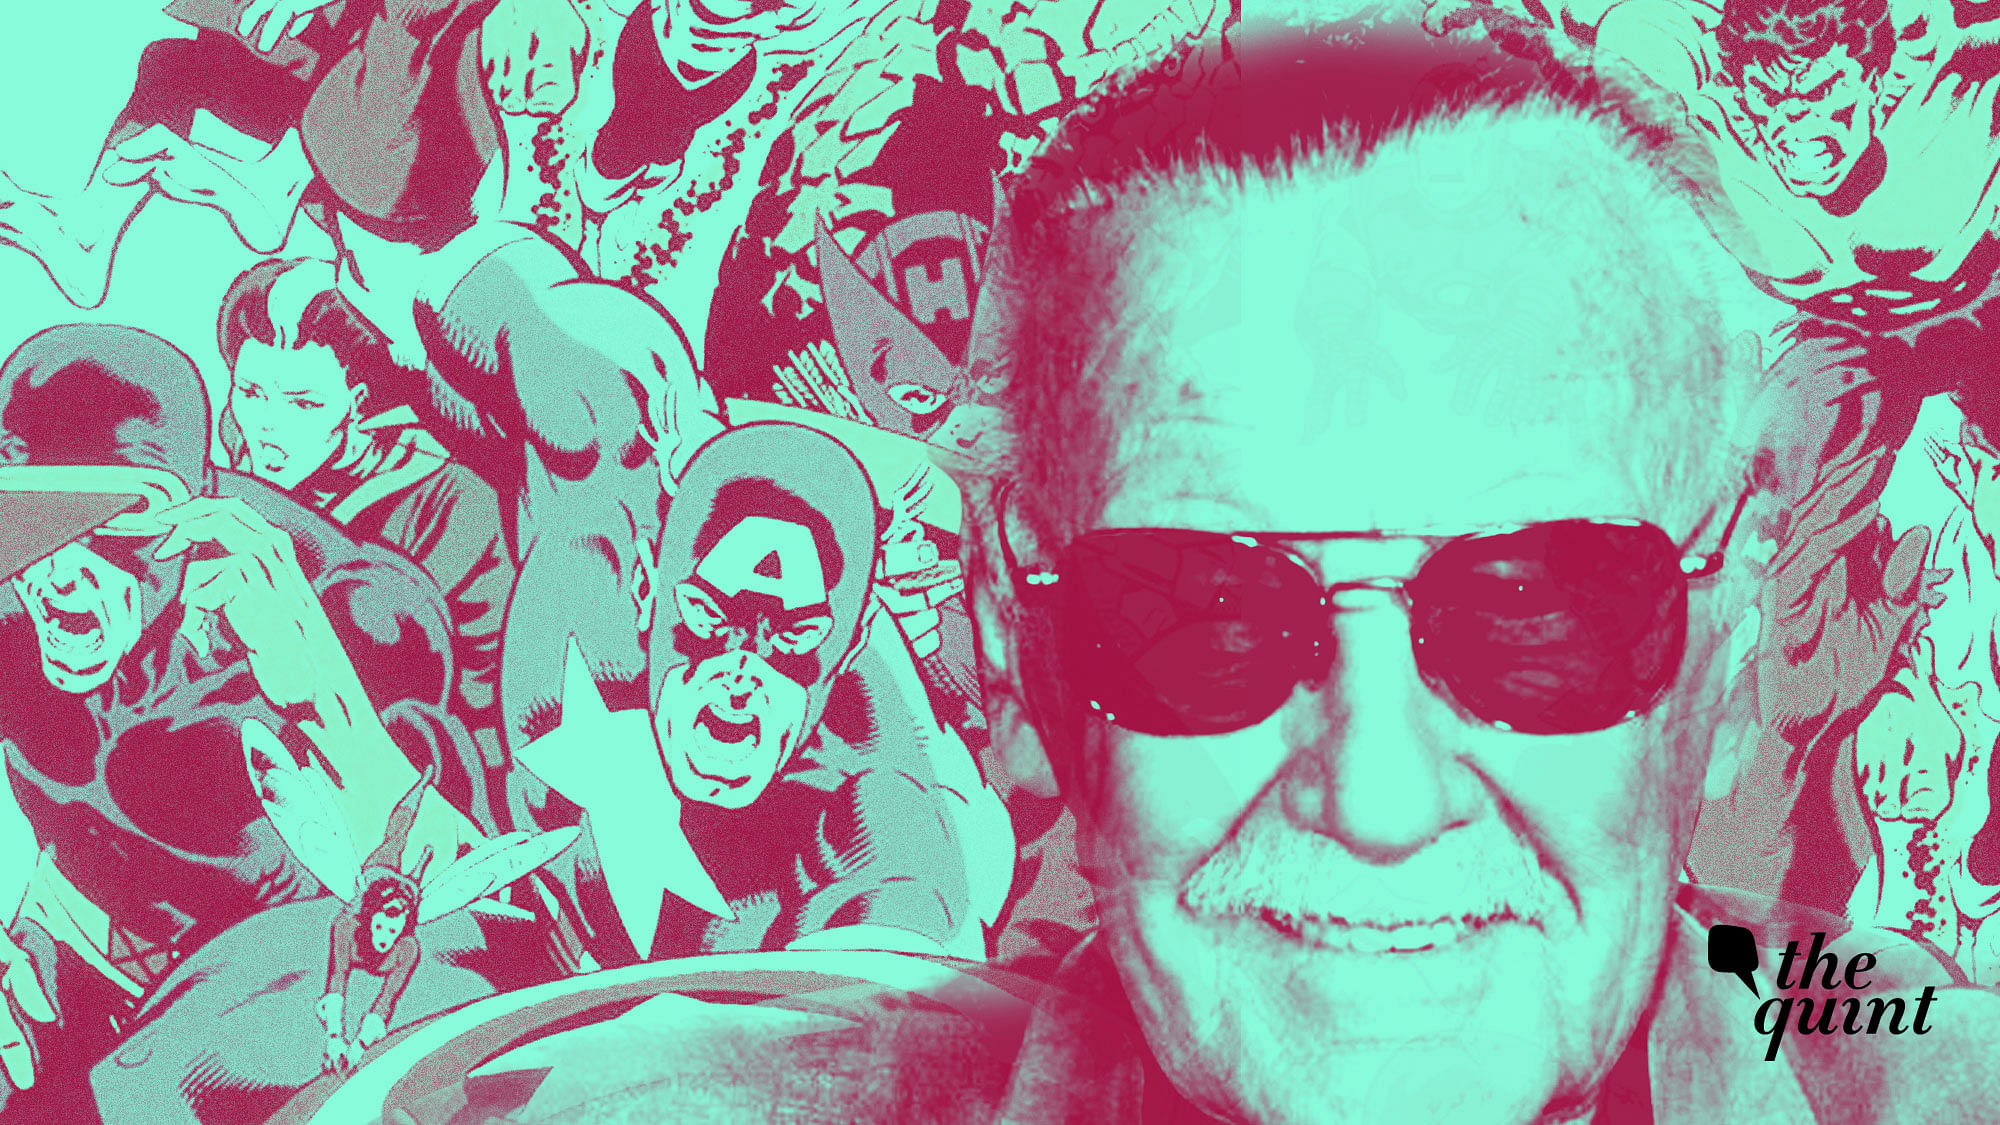 Stan Lee passes away at 95